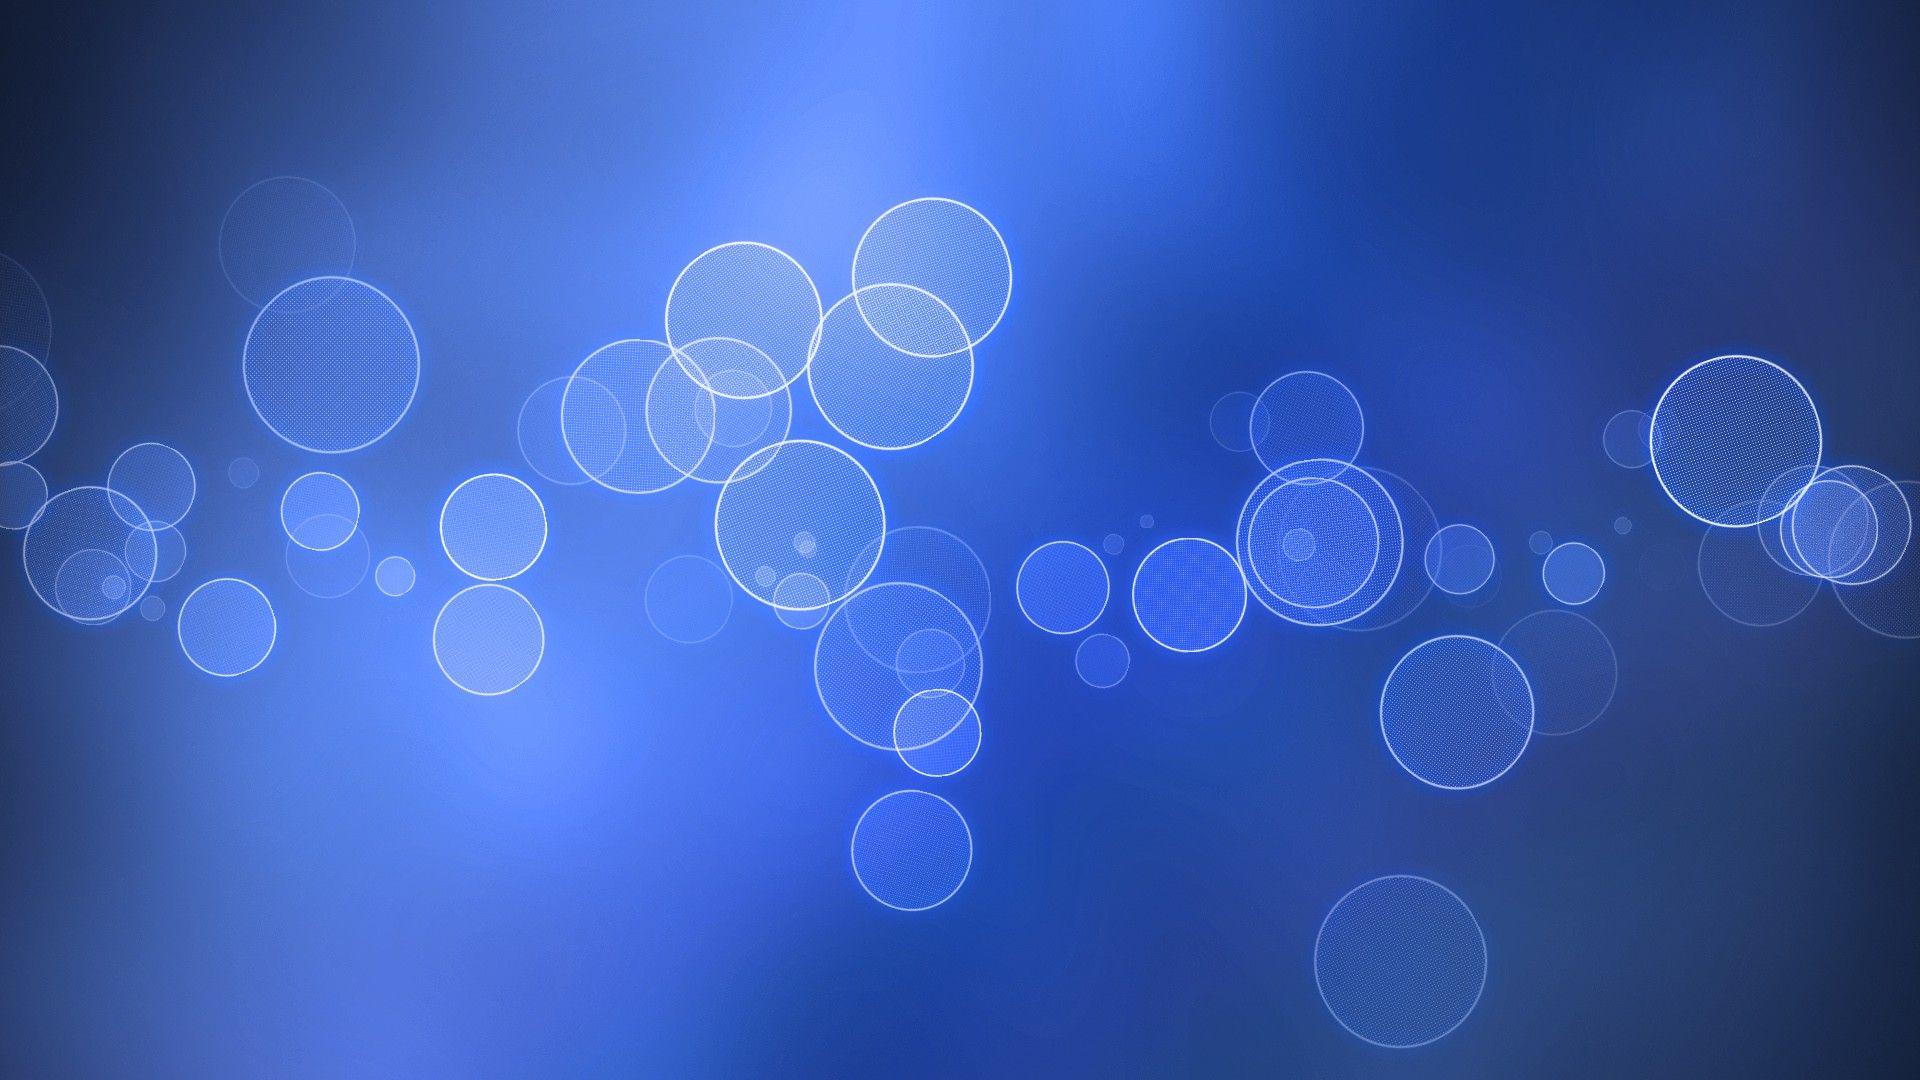 Download Blue Circles Wallpaper 1920x1080